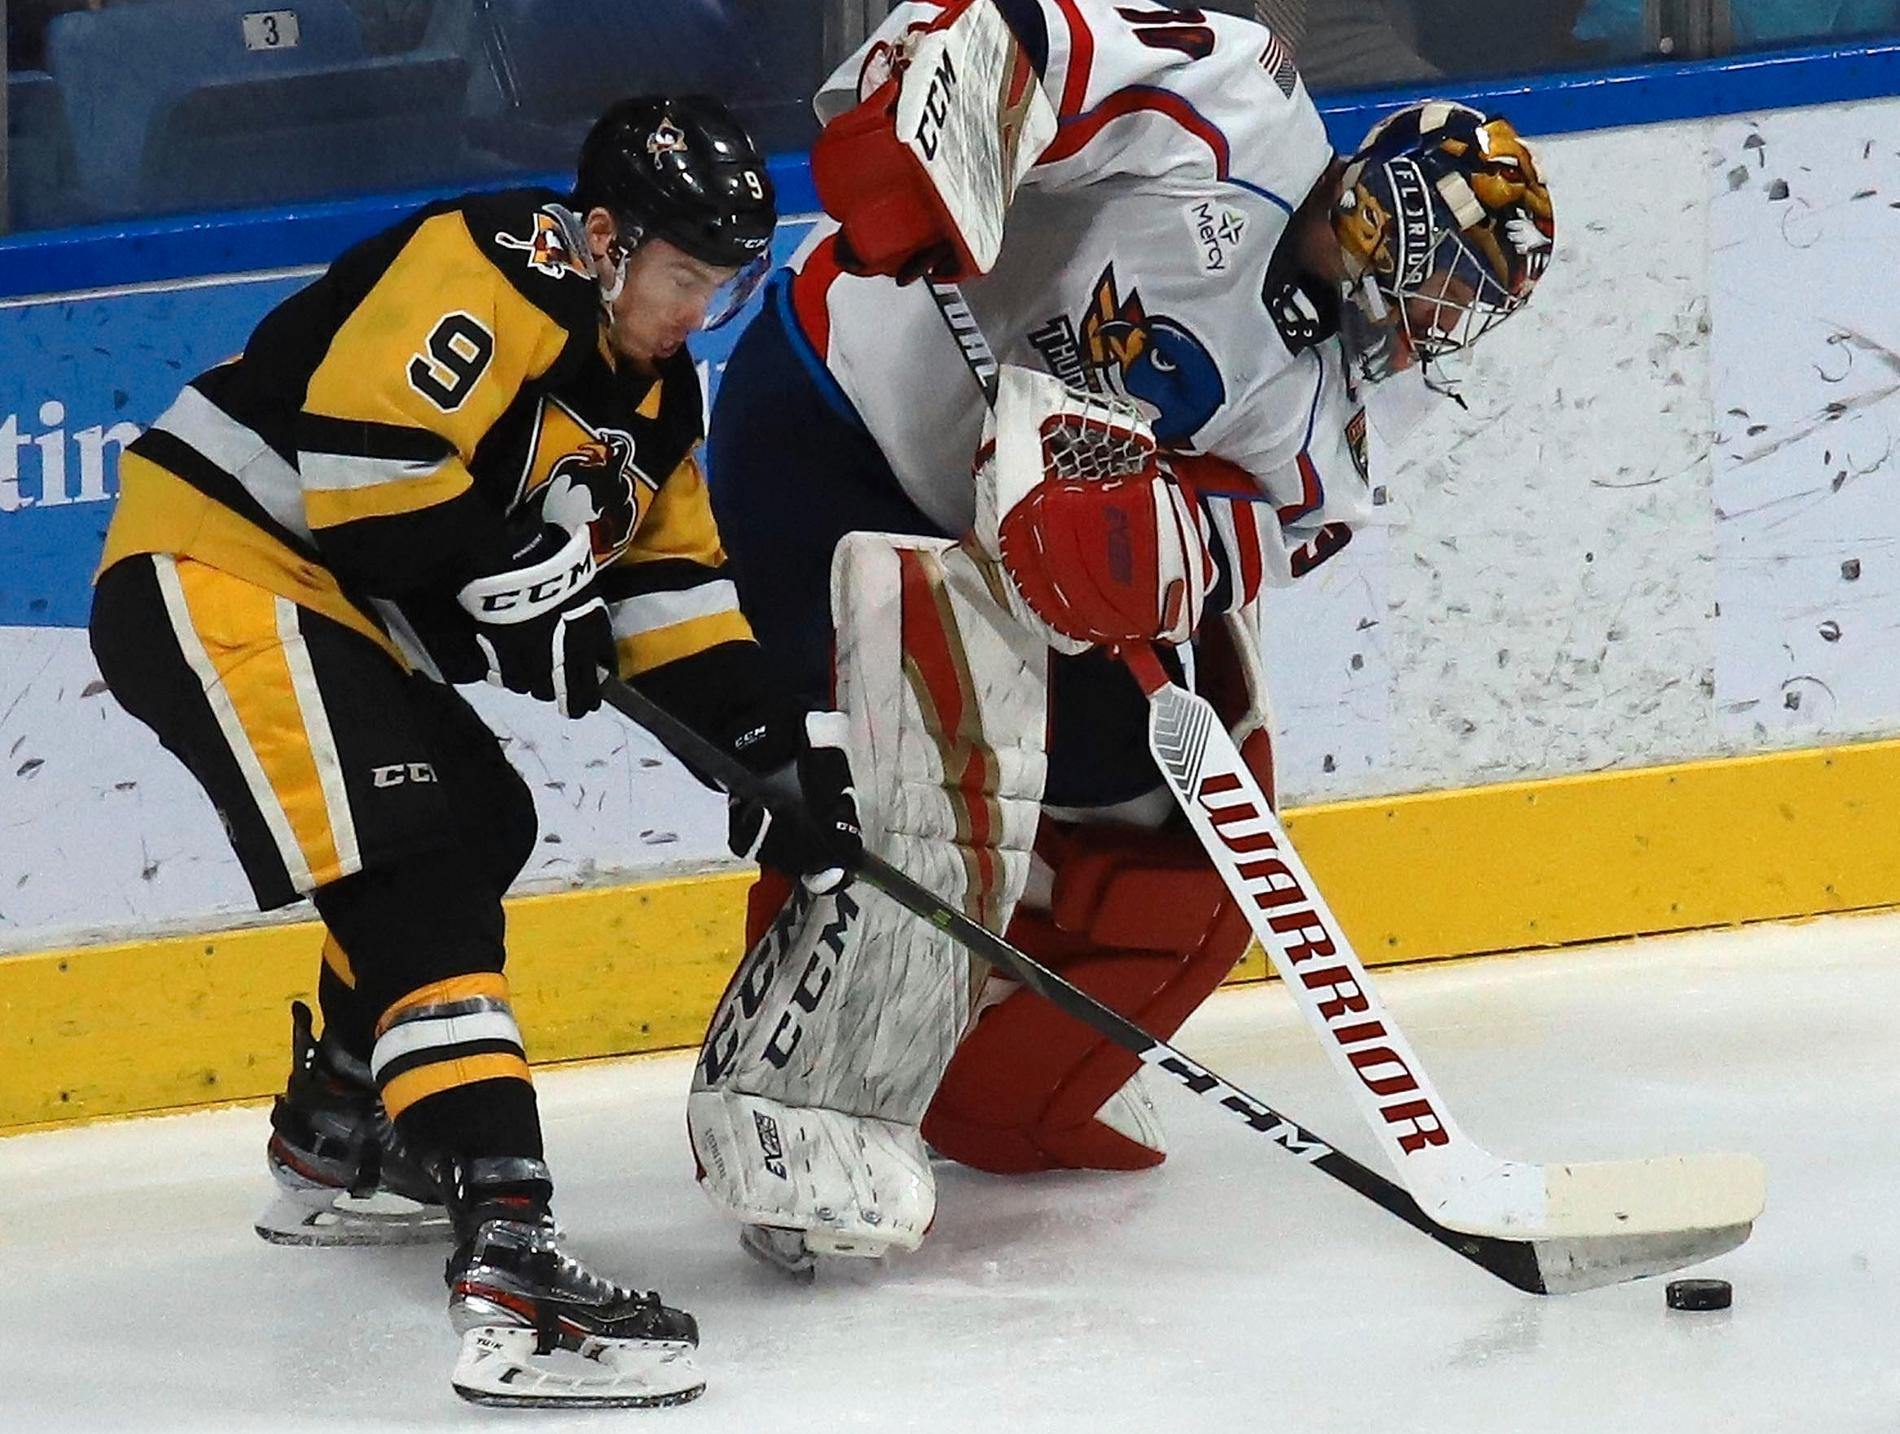 AHL-match mellan Wilkes-Barre/Scranton Penguins och Springfield Thunderbirds. Springfield har valt att dra sig ur årets säsong på grund av ekonomiska problem.